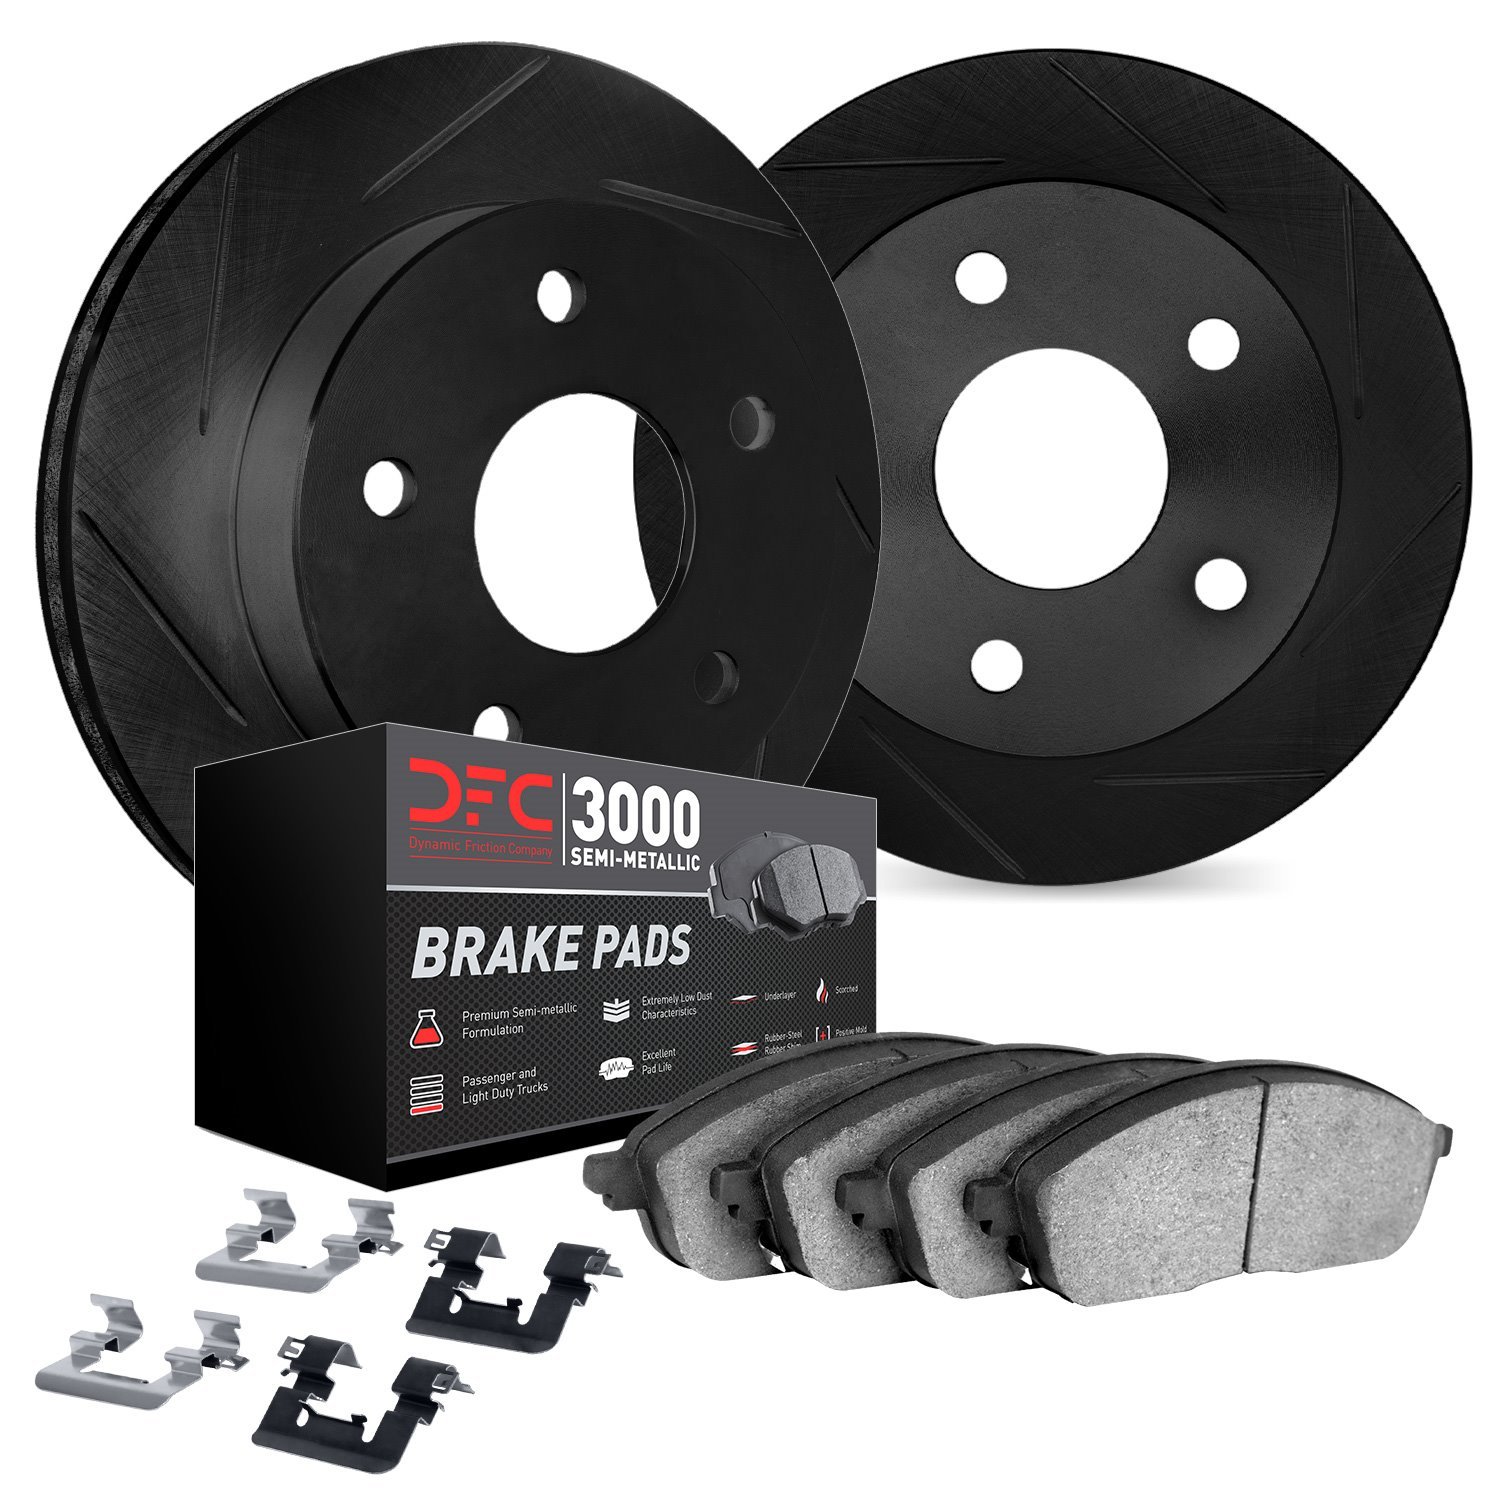 3112-76138 Slotted Brake Rotors with 3000-Series Semi-Metallic Brake Pads Kit & Hardware [Black], 2005-2015 Lexus/Toyota/Scion,